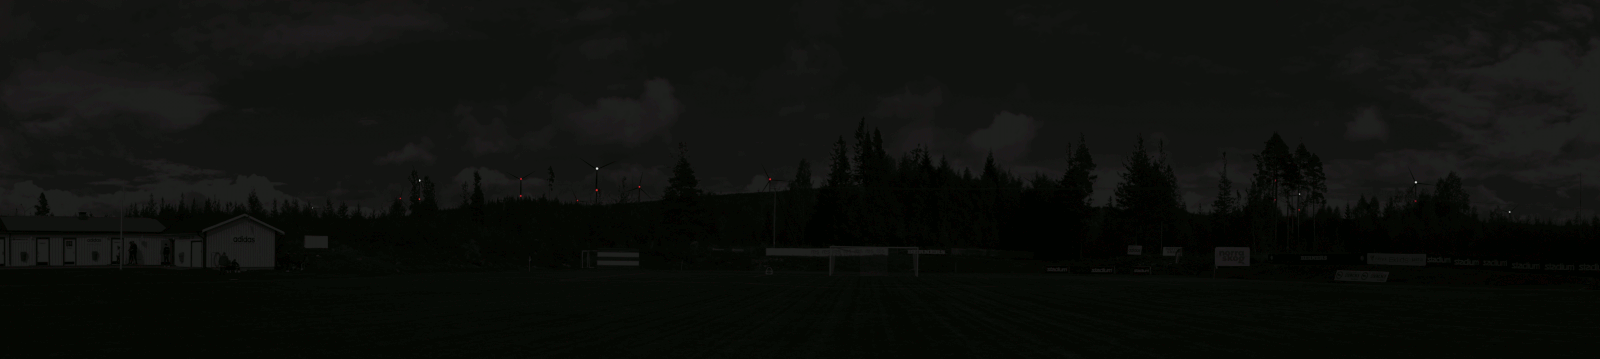 Animation av vindkraftverkens hinderbelysning i mörker, sett från fotopunkten Fotbollsplan Östavall (se dokument Mörkermontage ovan för detaljer).